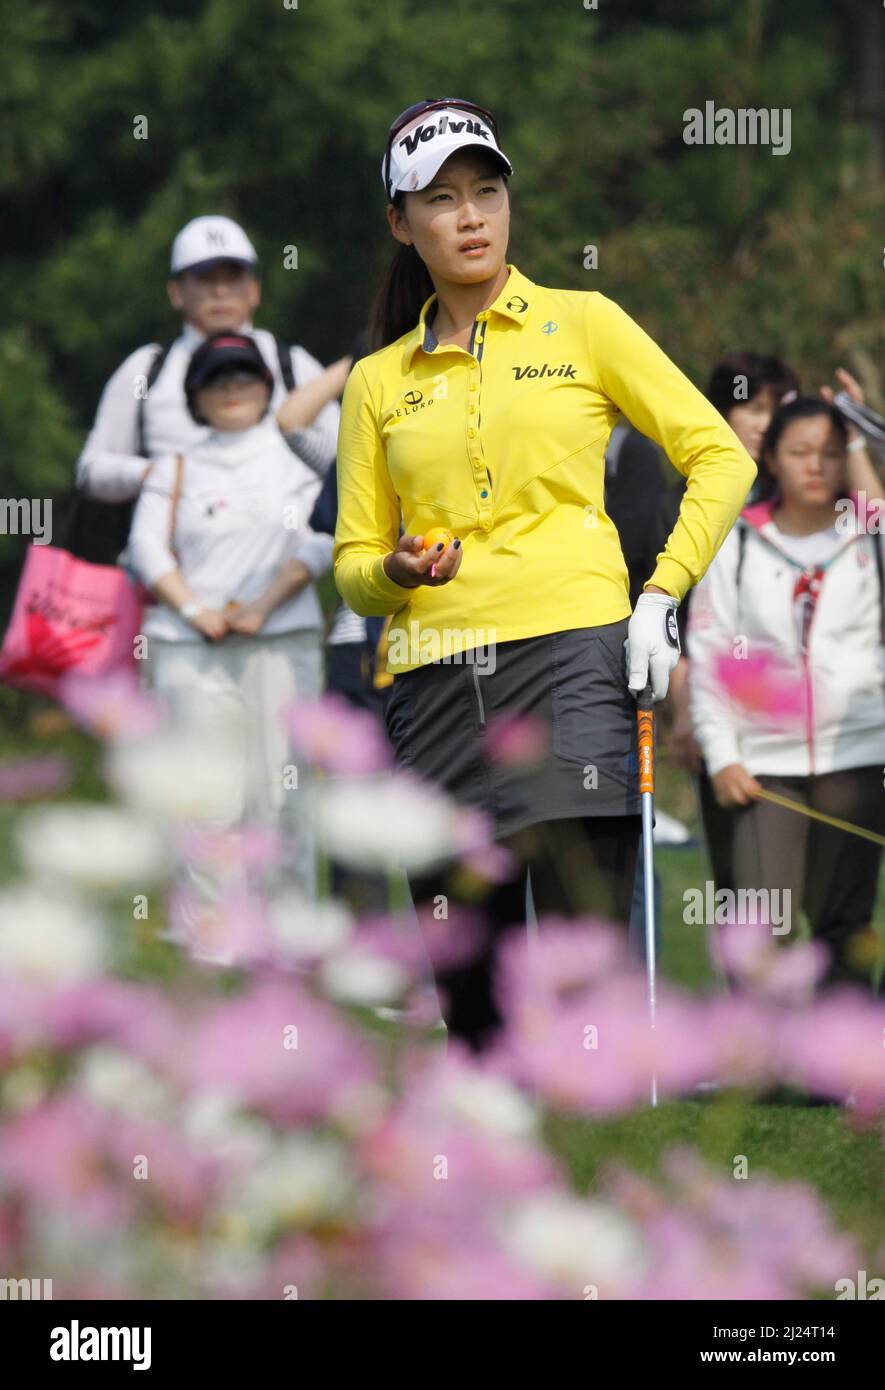 8 octobre 2011-Incheon, Corée du Sud-CHOI, Chella de Corée du Sud, joue sur le 3th trous lors du championnat LPGA par Hana Bank au club de golf SKY72 à Incheon le 8 octobre 2011, Corée du Sud. Banque D'Images